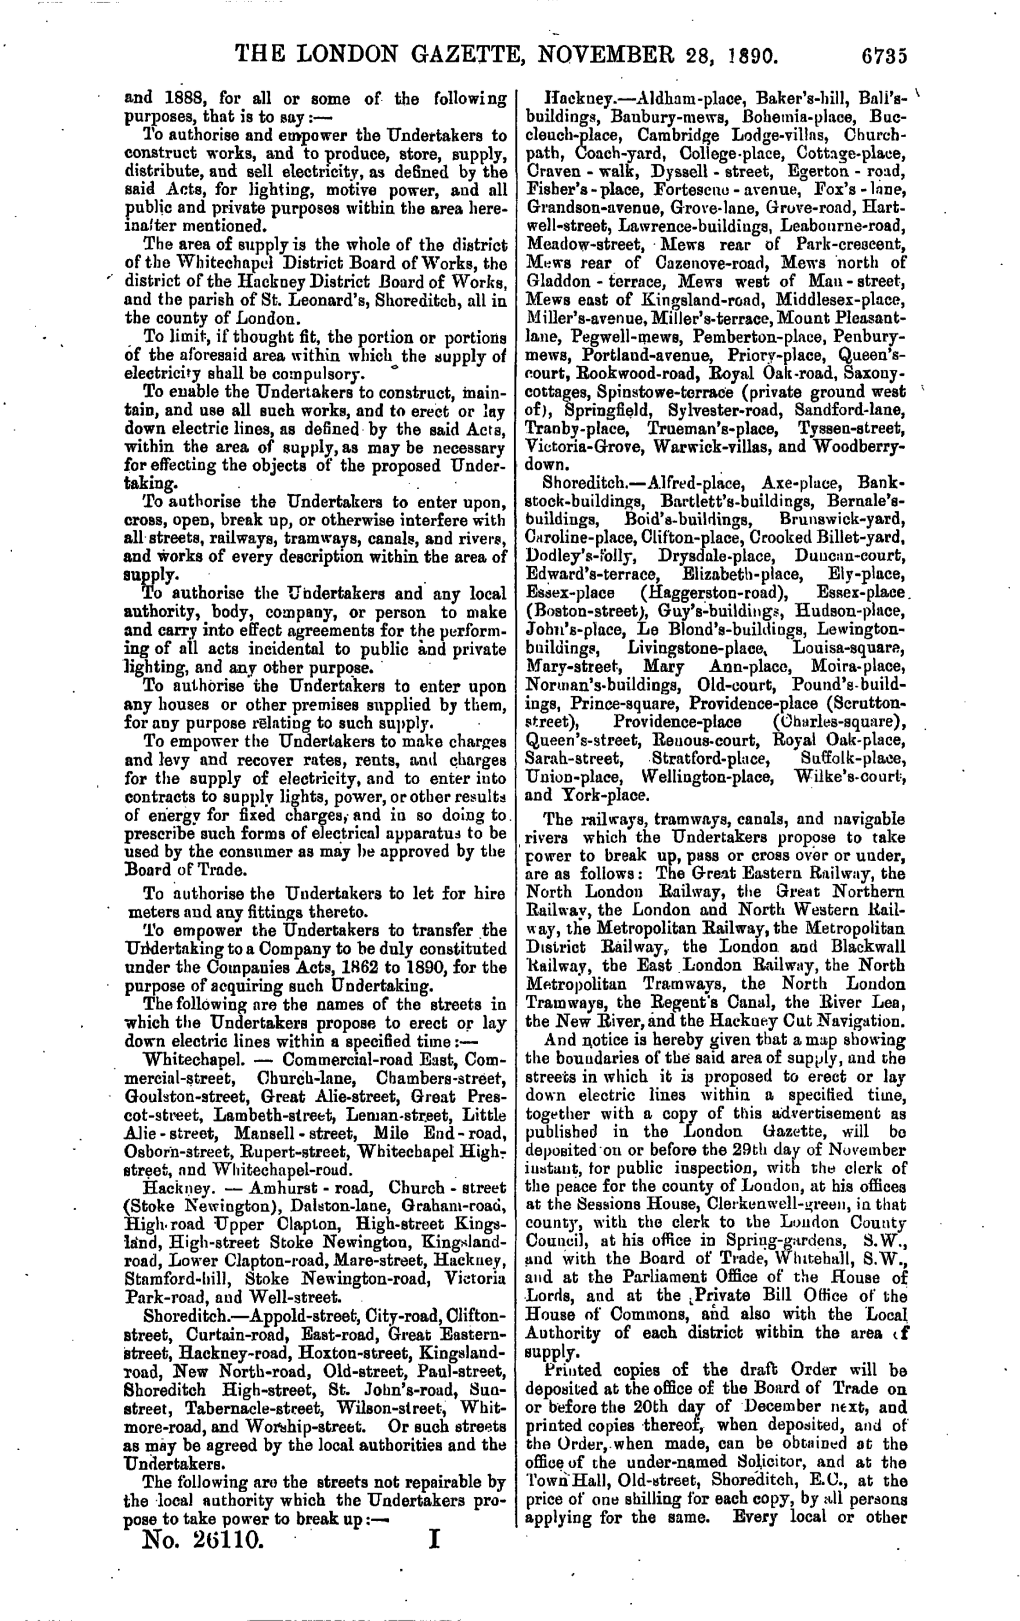 THE LONDON GAZETTE, NOVEMBER 28, 1890. No. 2(5110. I